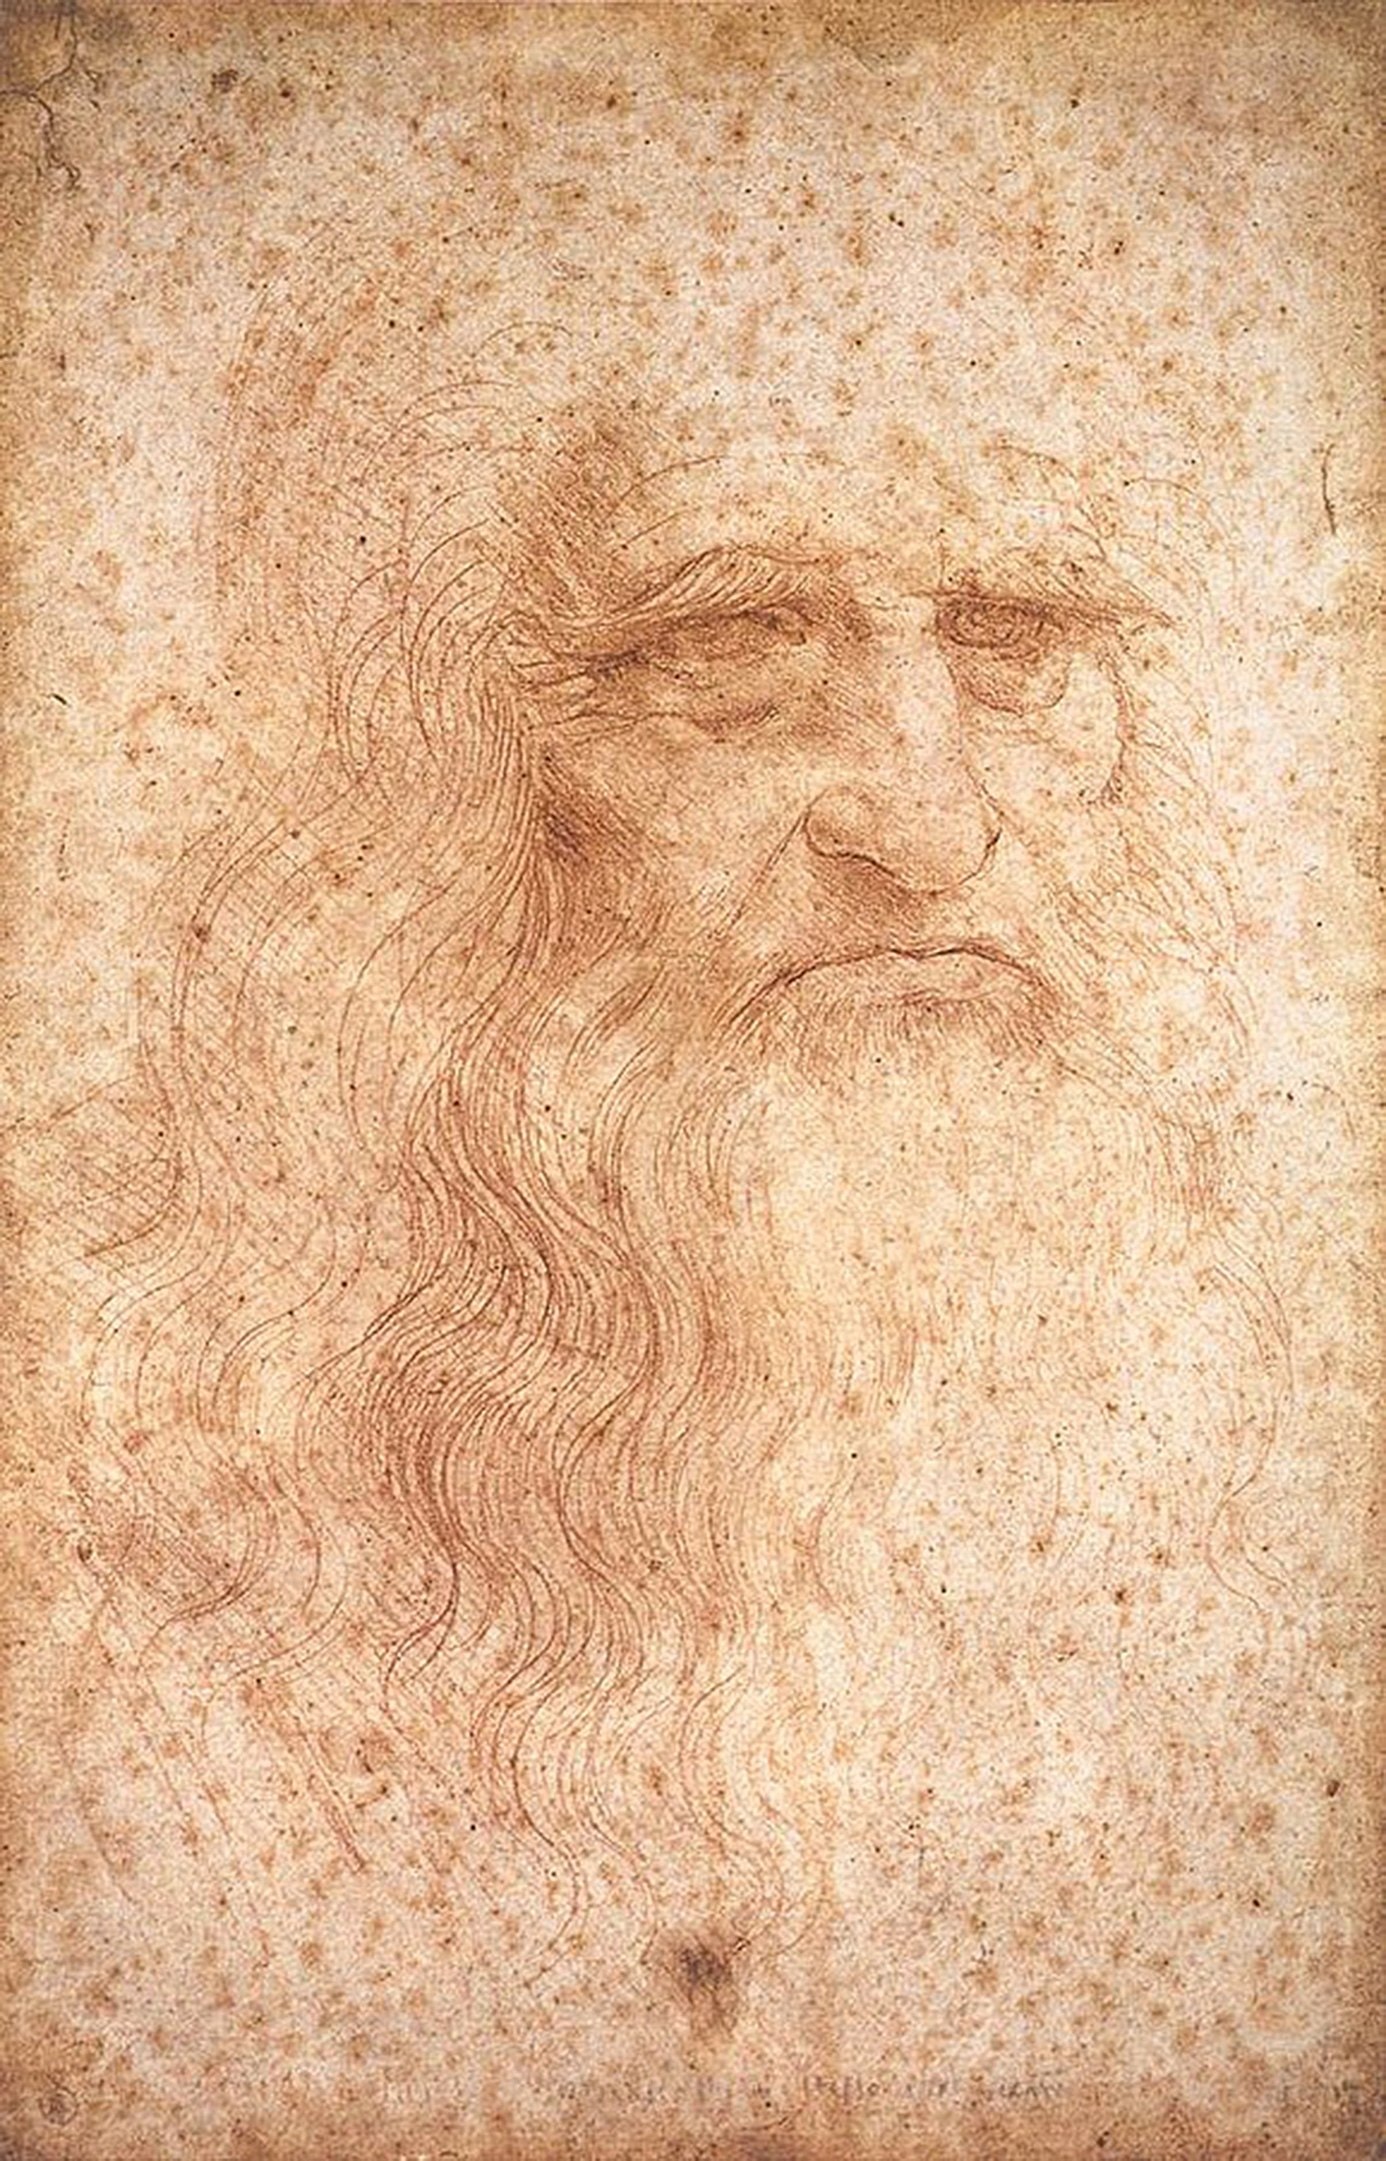 Selbstbildnis von Leonardo da Vinci